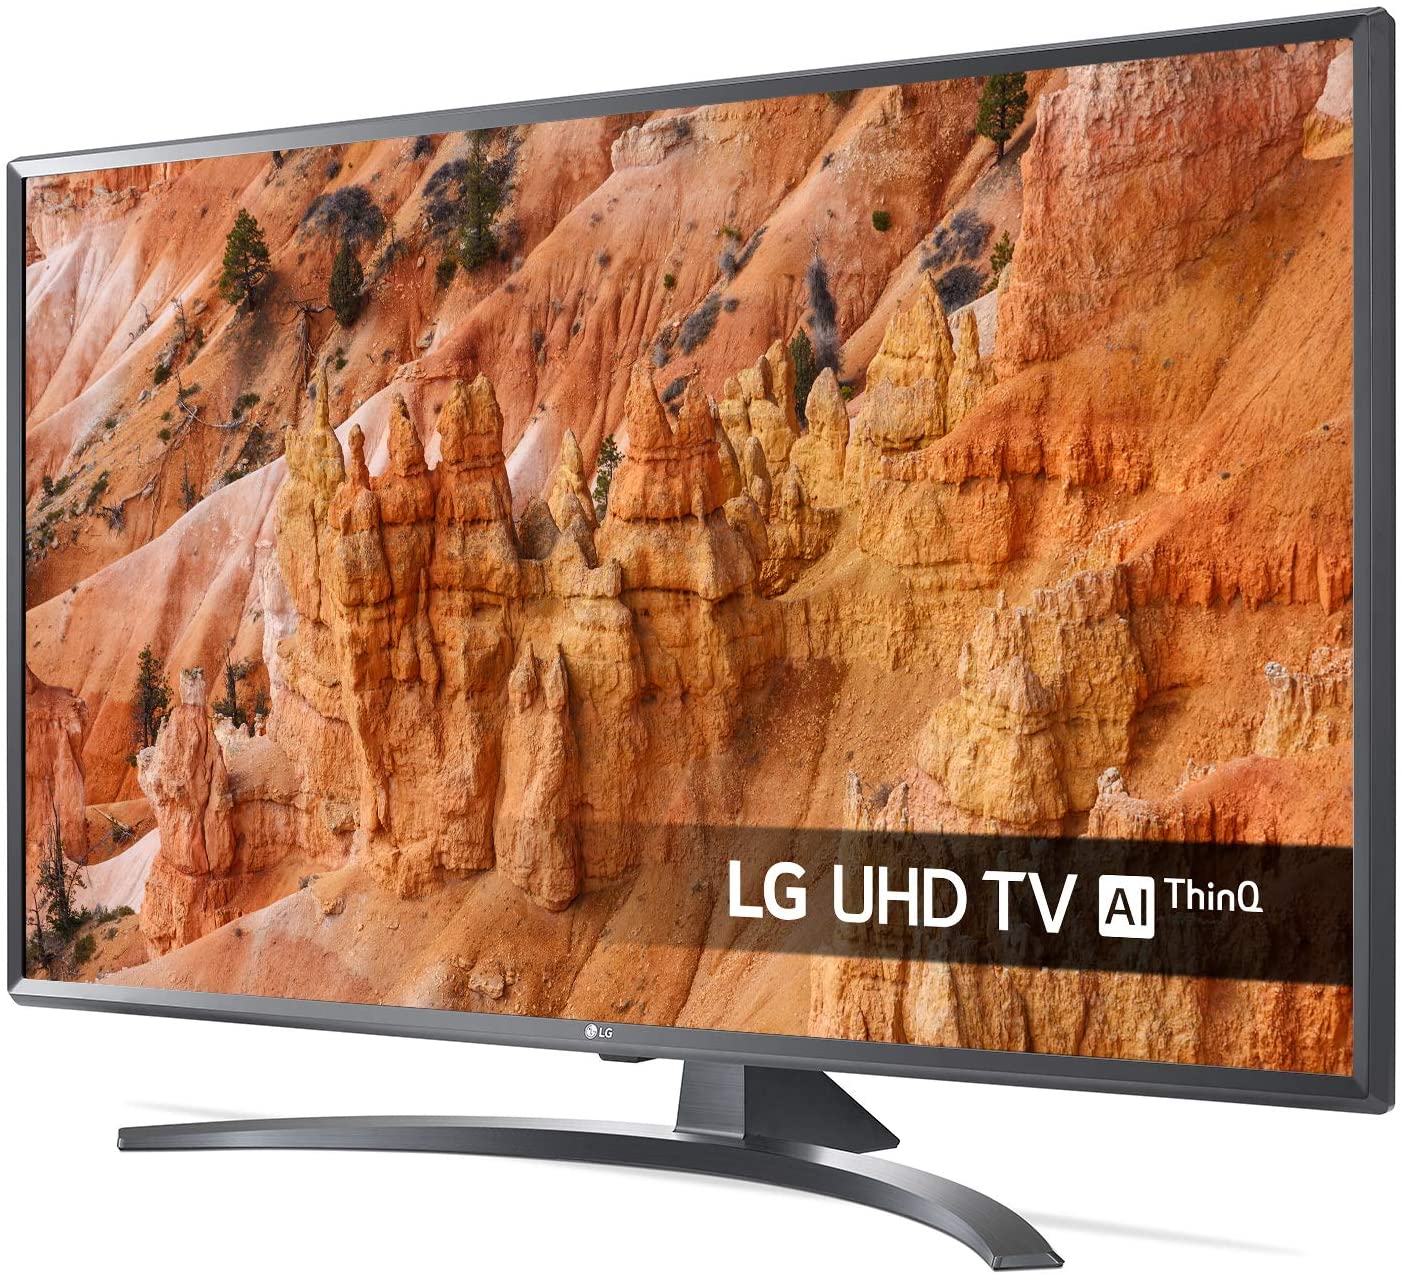 LG TV LED 4K AI Ultra HD - Smart TV 55"